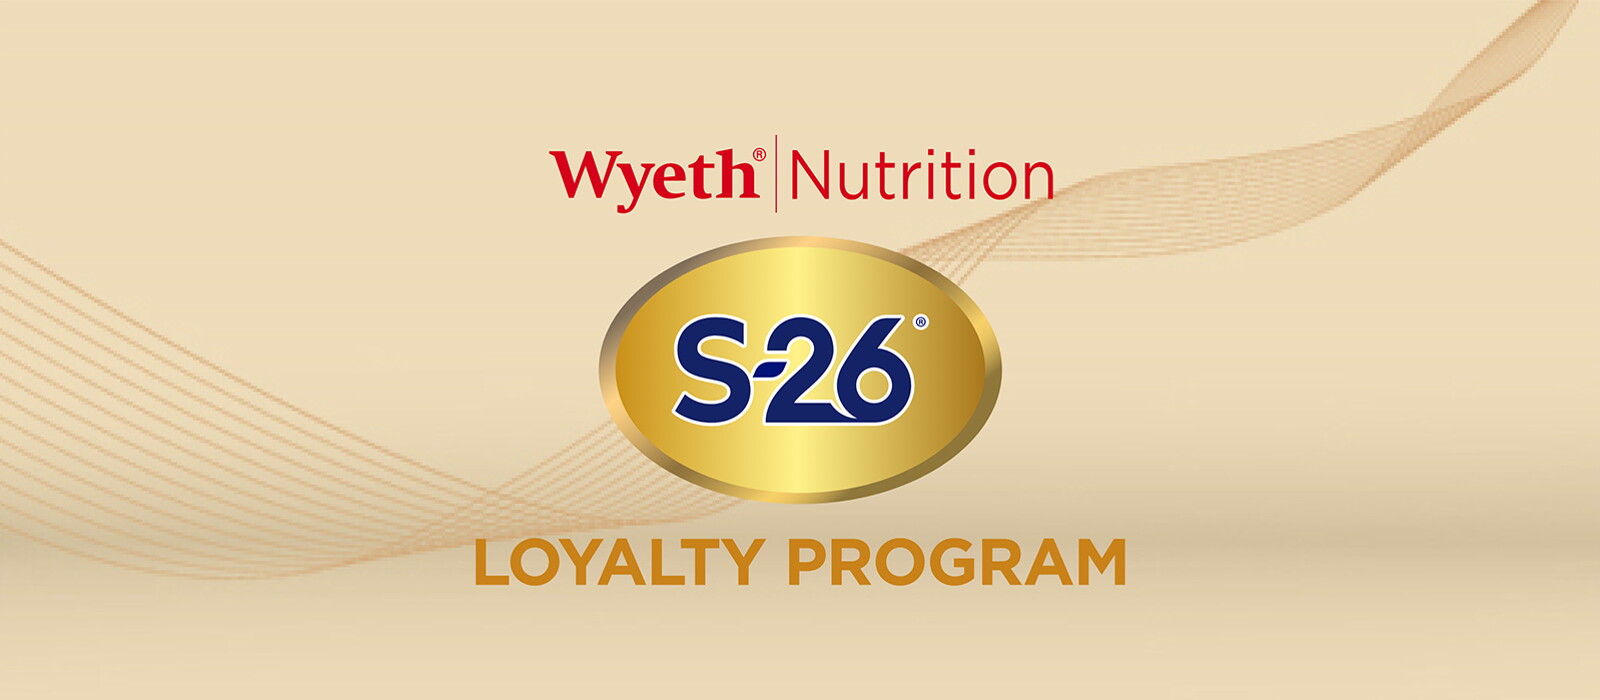 Loyalty Program Wyeth Nutrition